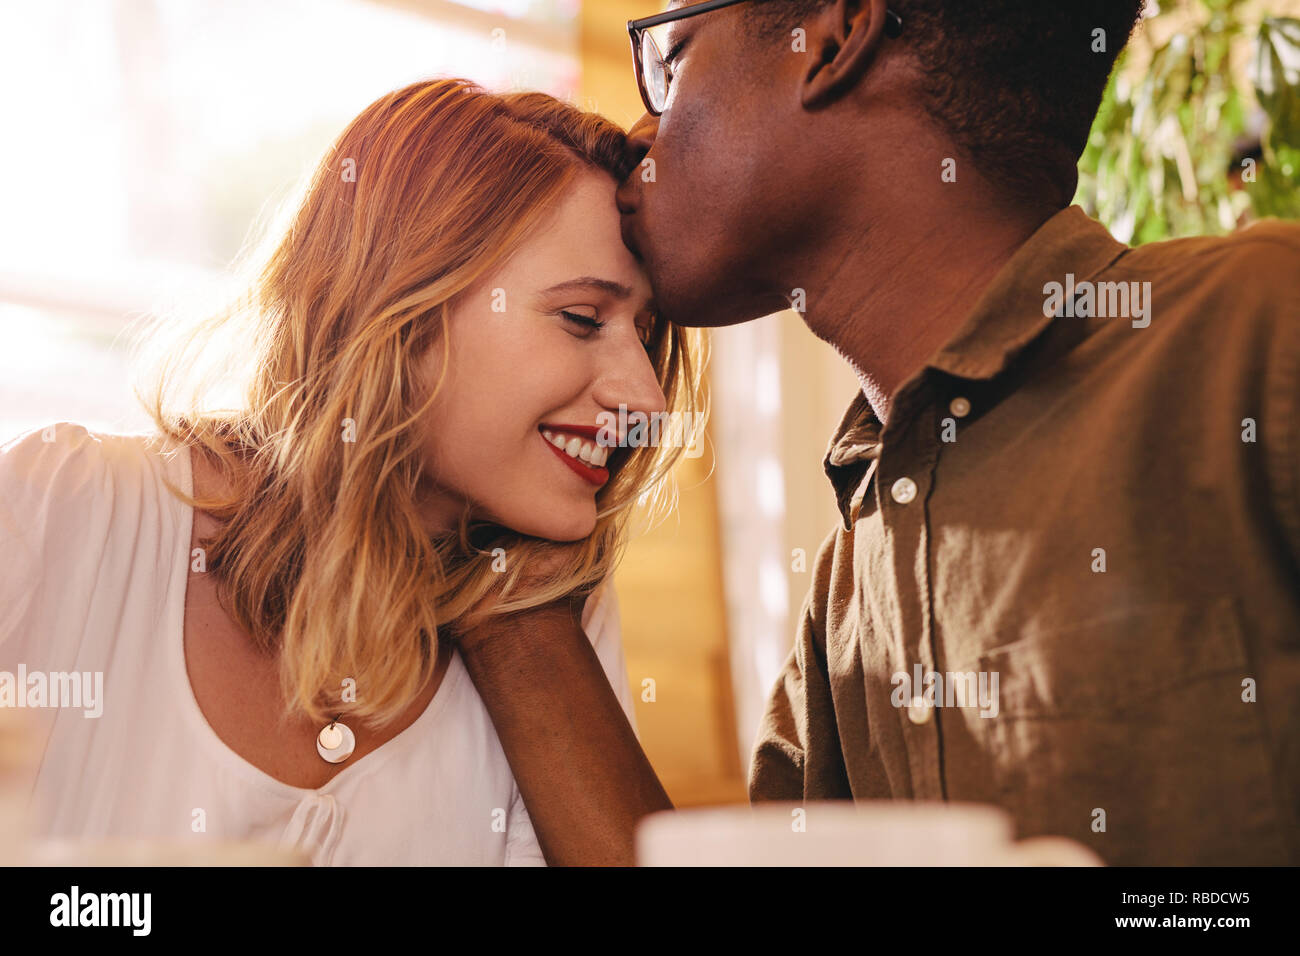 Hombre africano besar la frente de su novia. Interracial pareja amorosa en la fecha en la cafetería. Foto de stock